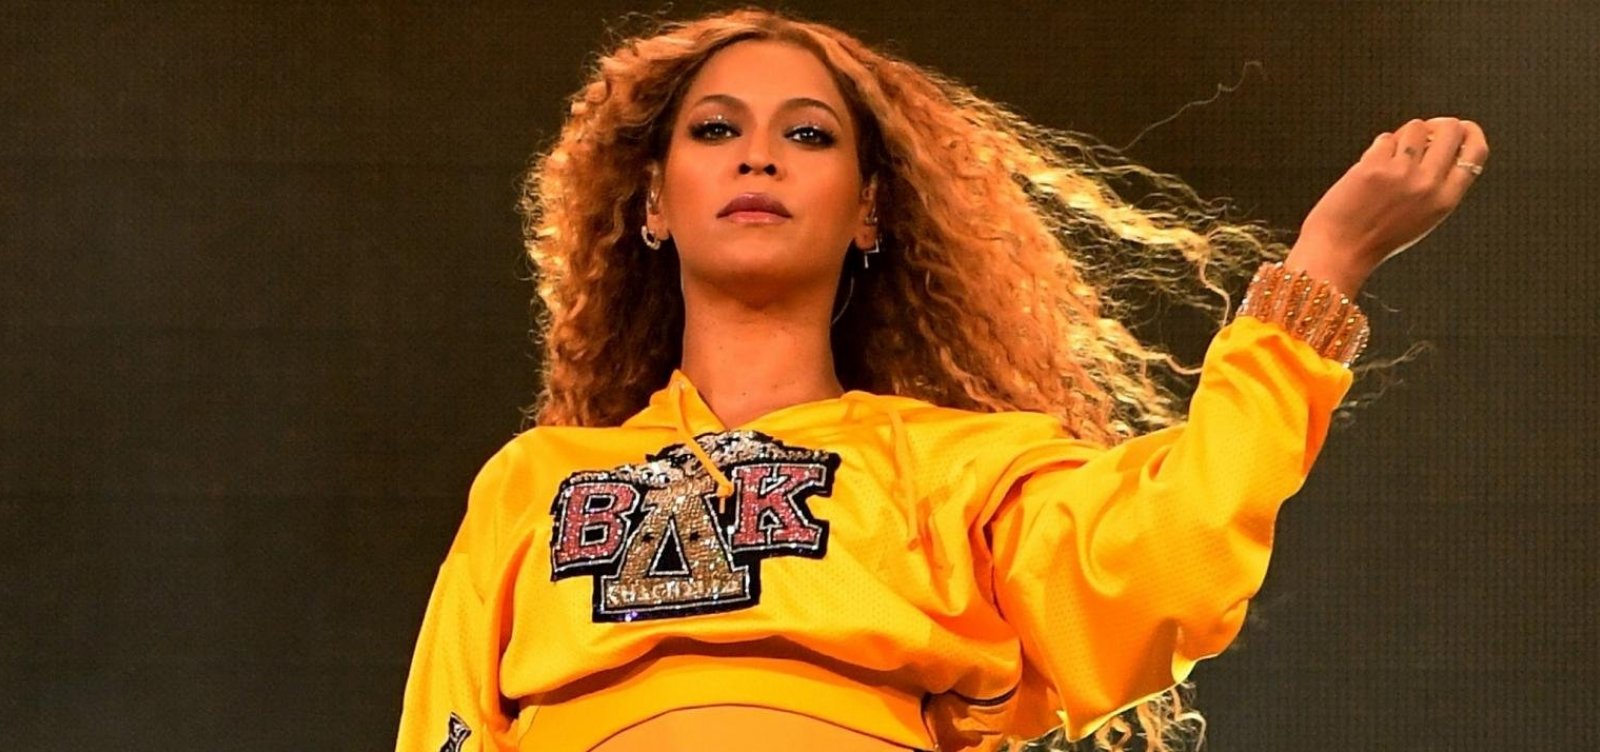 Documentário sobre Beyoncé estreia hoje na Netflix